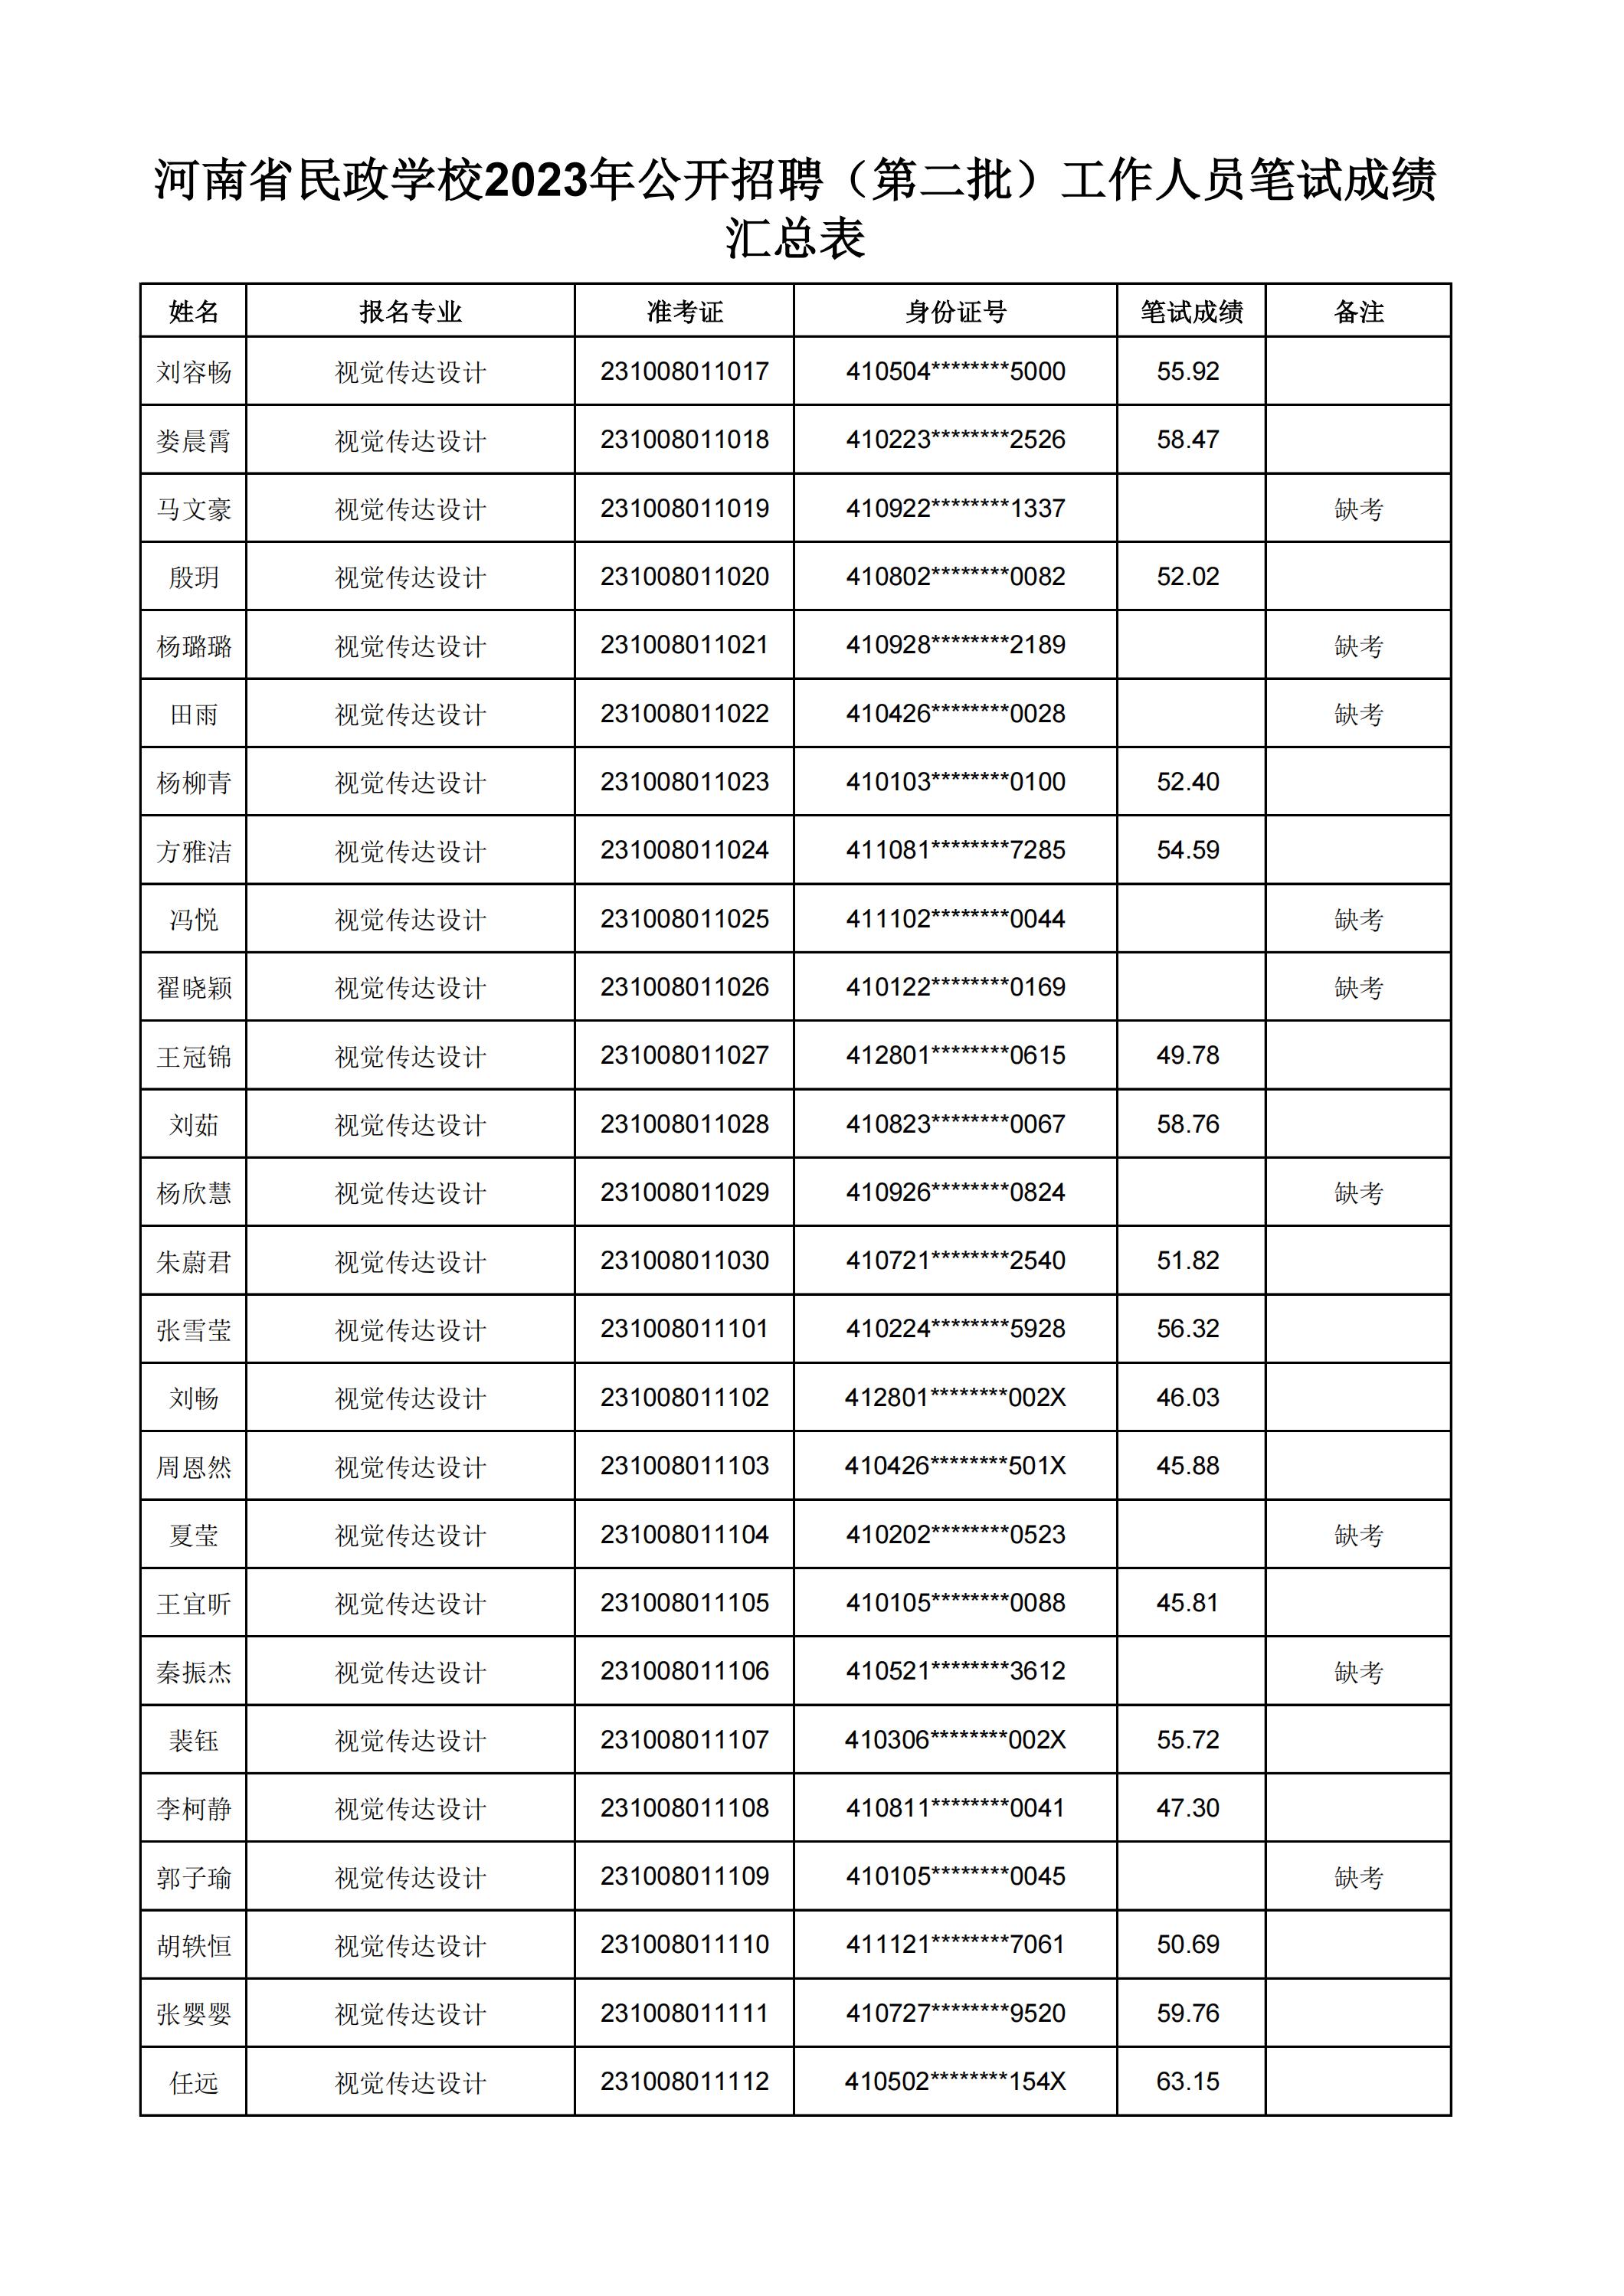 河南省民政学校2023年公开招聘（第二批）工作人员笔试成绩汇总表(2)_11.jpg